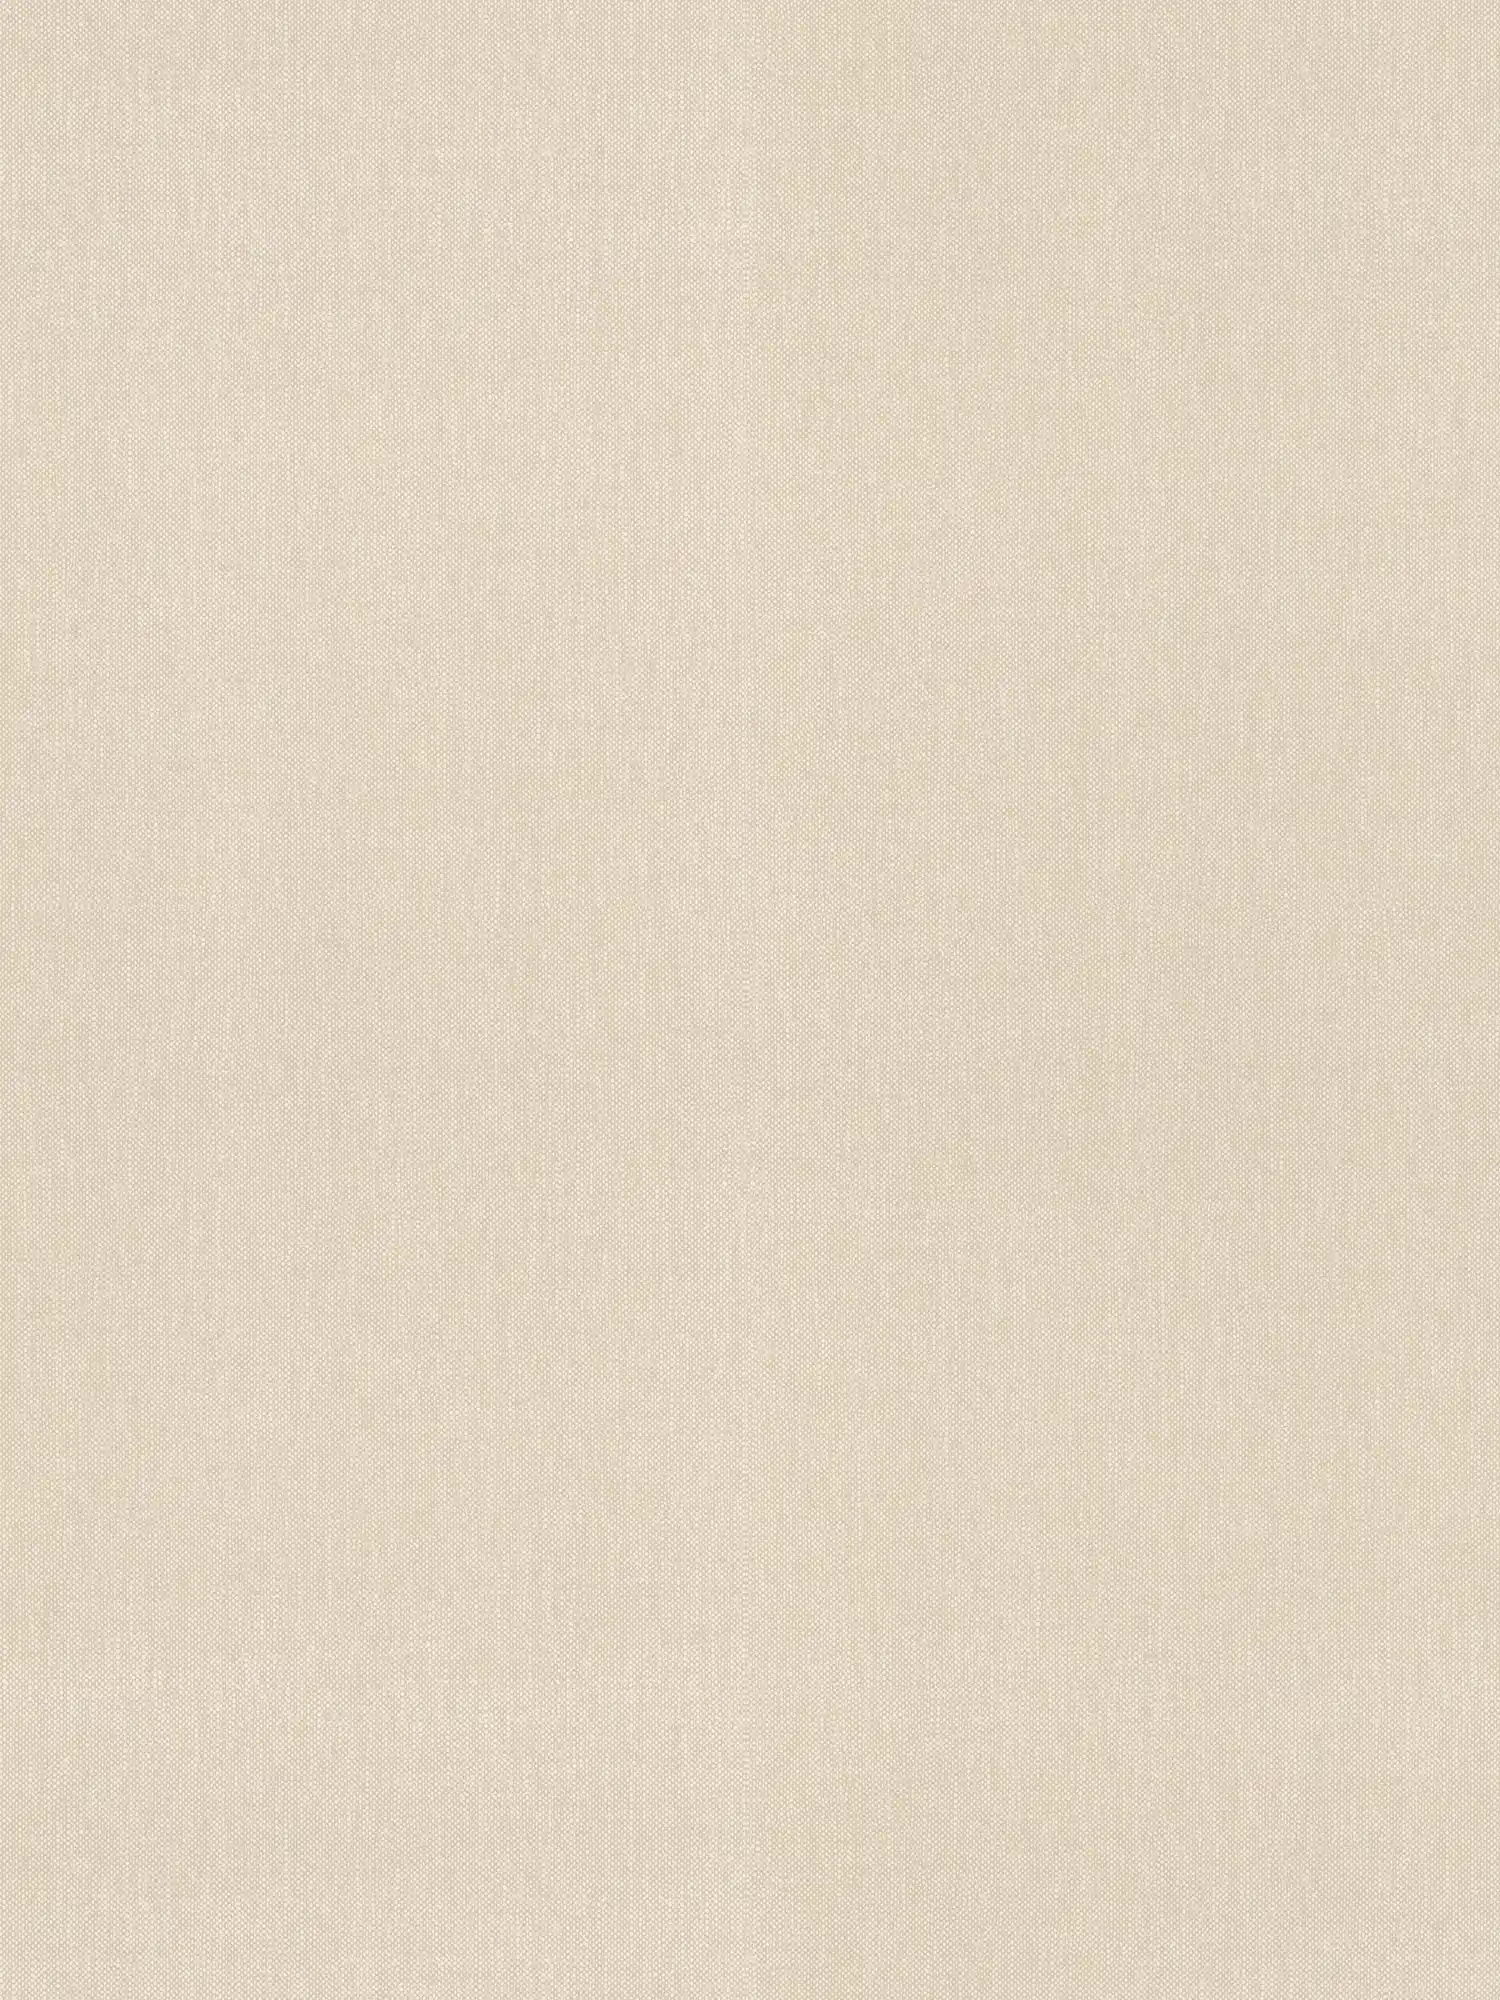 Carta da parati a tinta unita beige con struttura tessile in stile country
